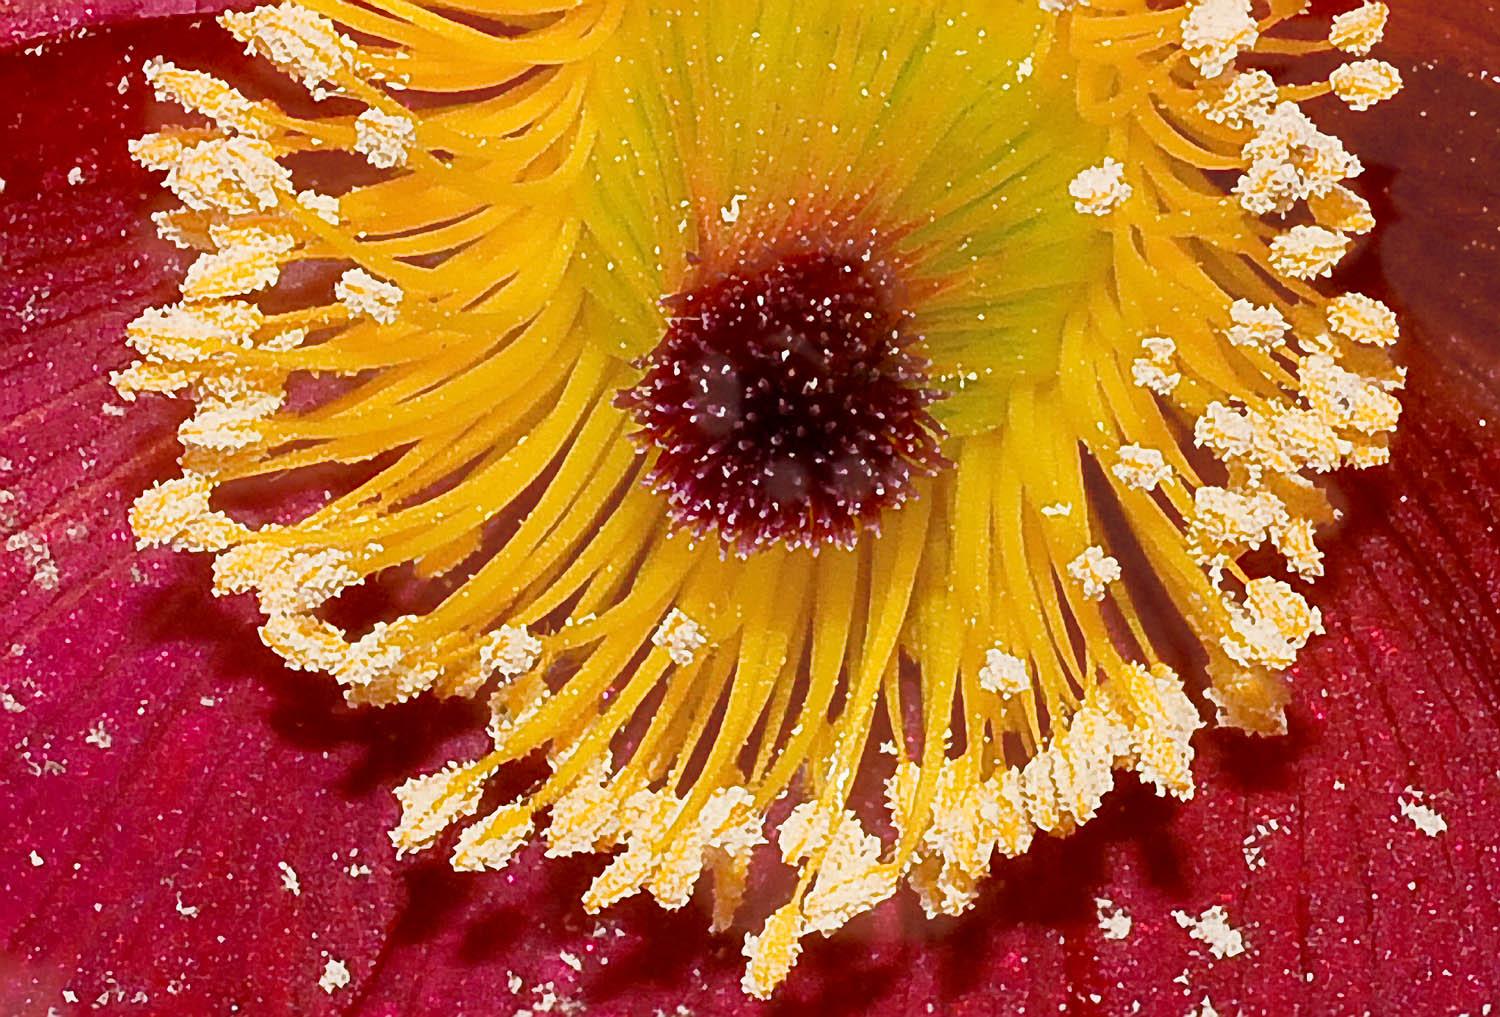 Pasque Flower Up Close